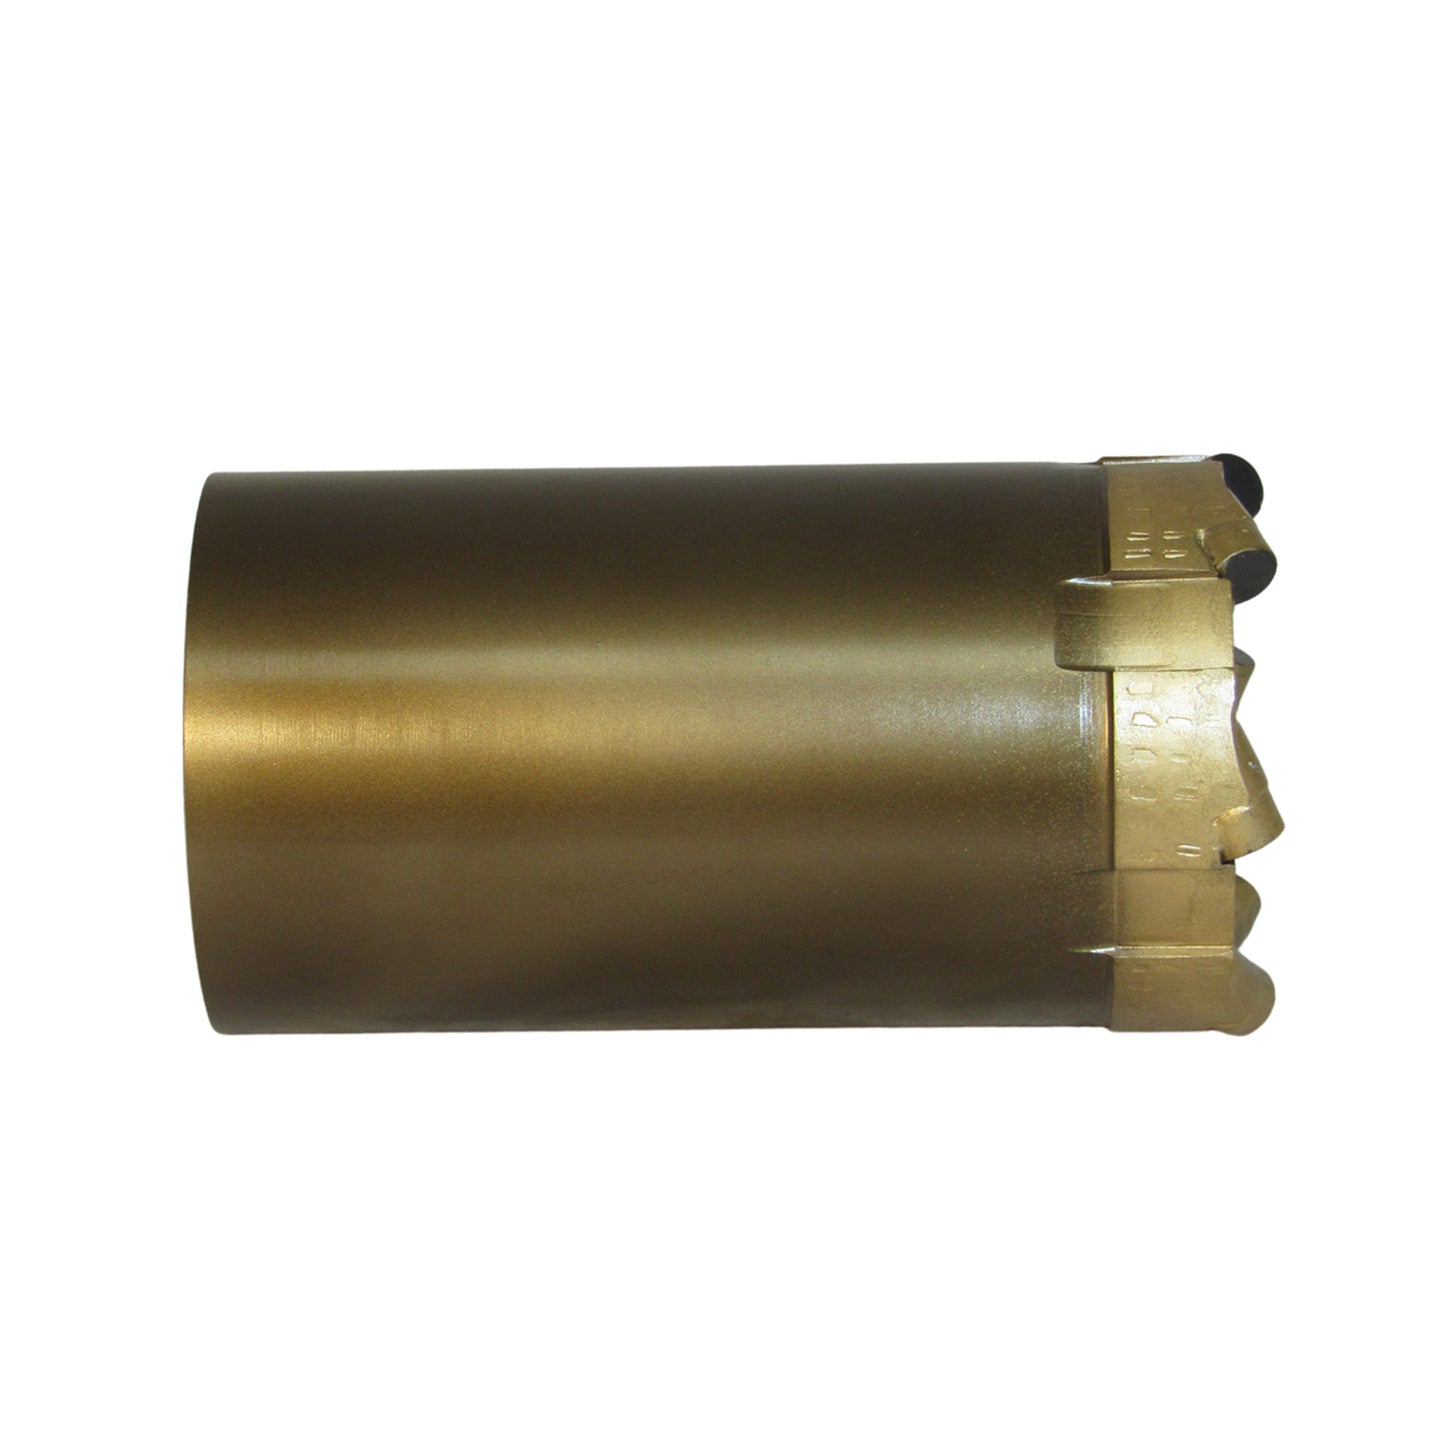 Broca perforadora Phoenix T2-101 - PCD - Estándar